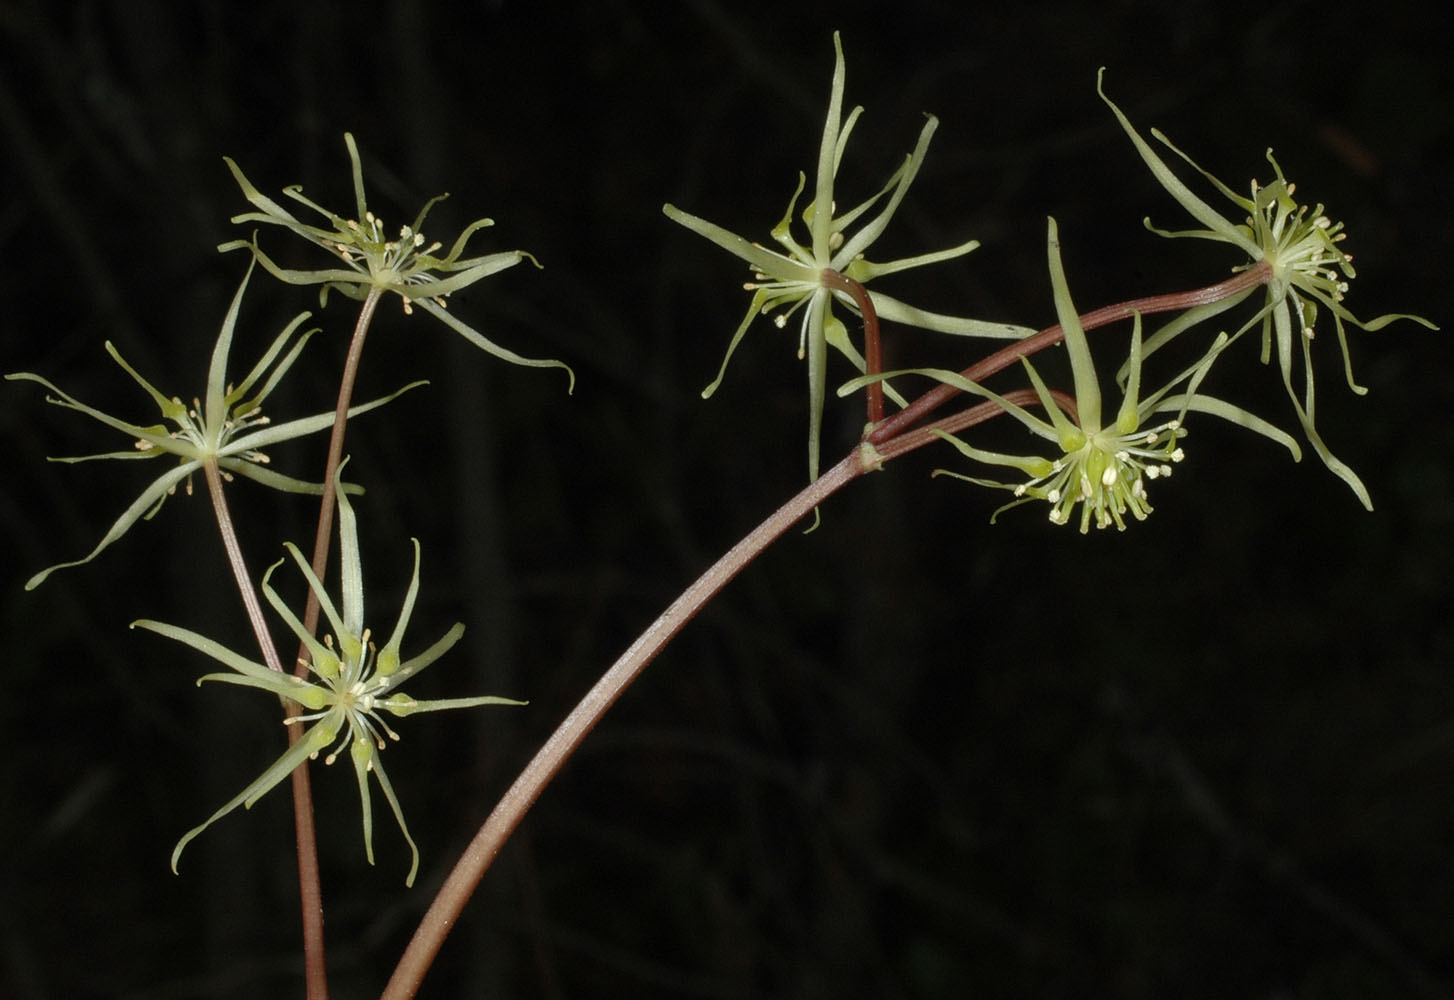 Flora of Eastern Washington Image: Coptis occidentalis